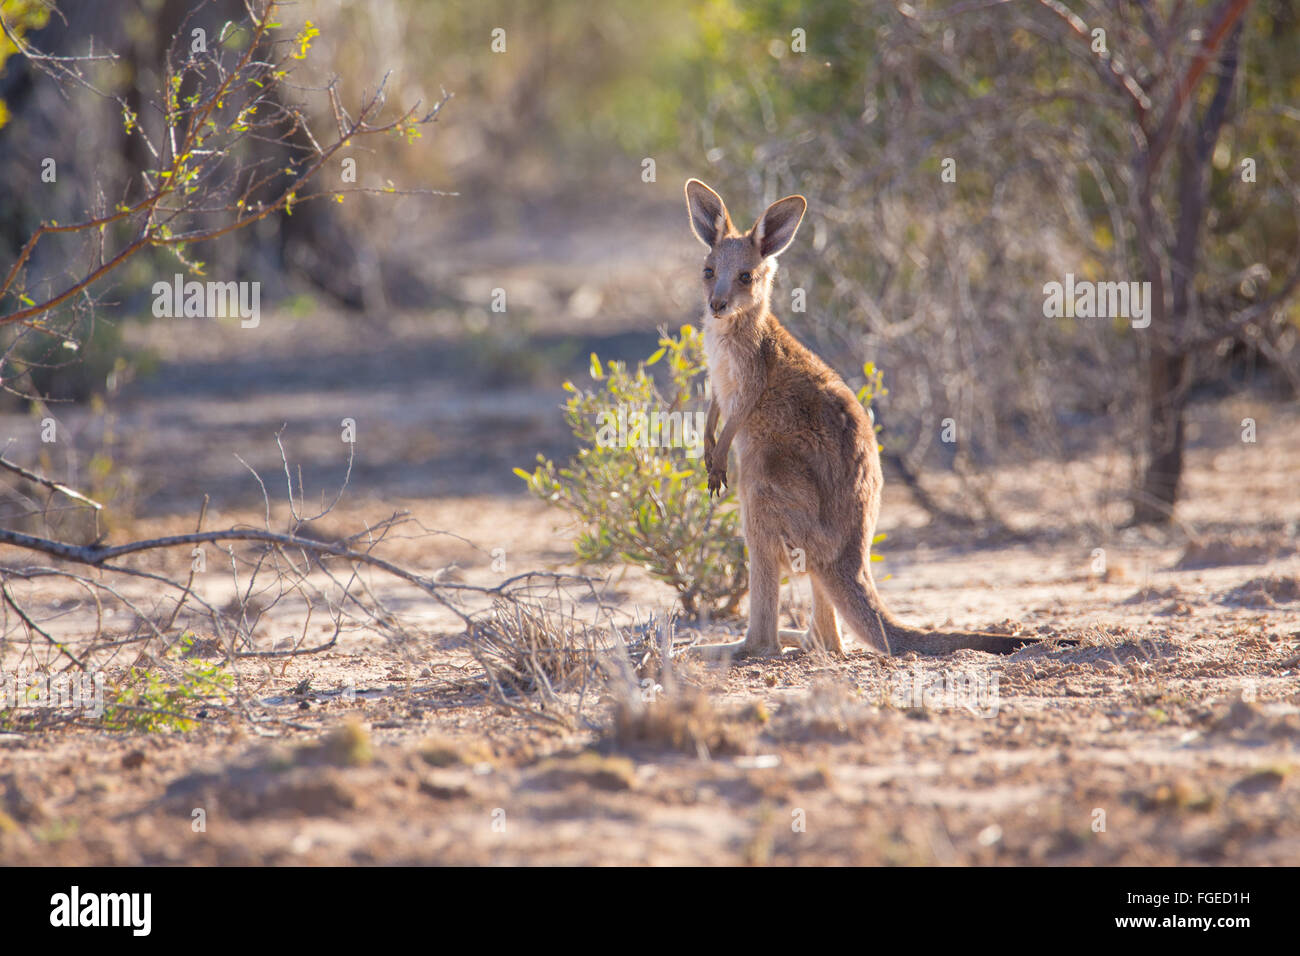 Eastern Grey Kangaroo joey (Macropus giganteus) Stock Photo